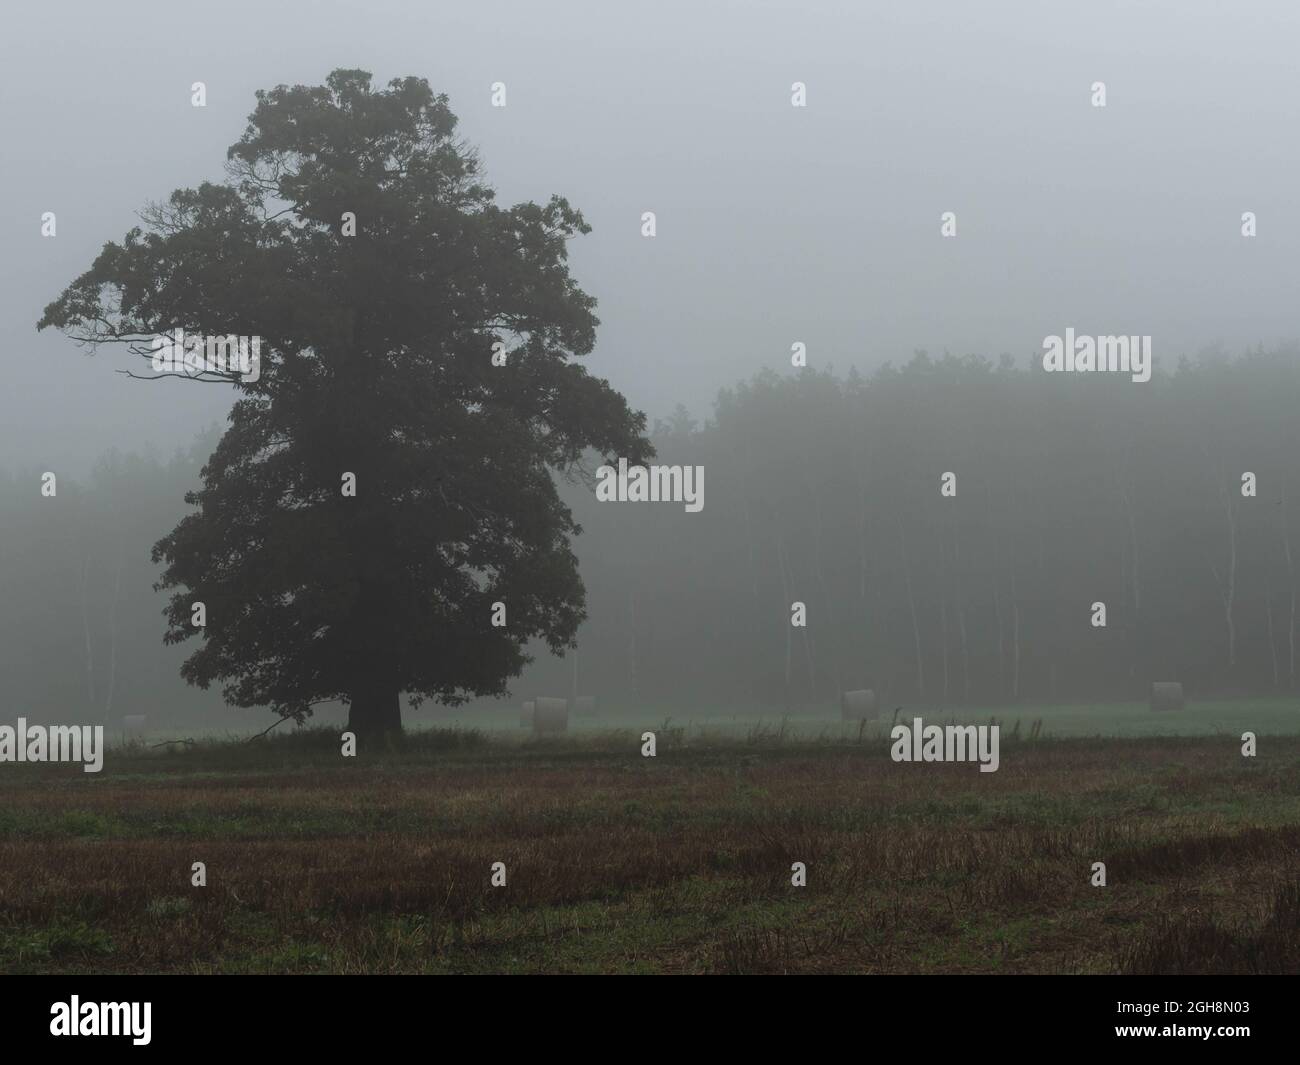 Vasto terreno pianeggiante, campi arabili e prati. C'è nebbia nell'aria. C'è un grande albero di quercia tra la nebbia. C'è una fila di alberi più lontano. Foto Stock